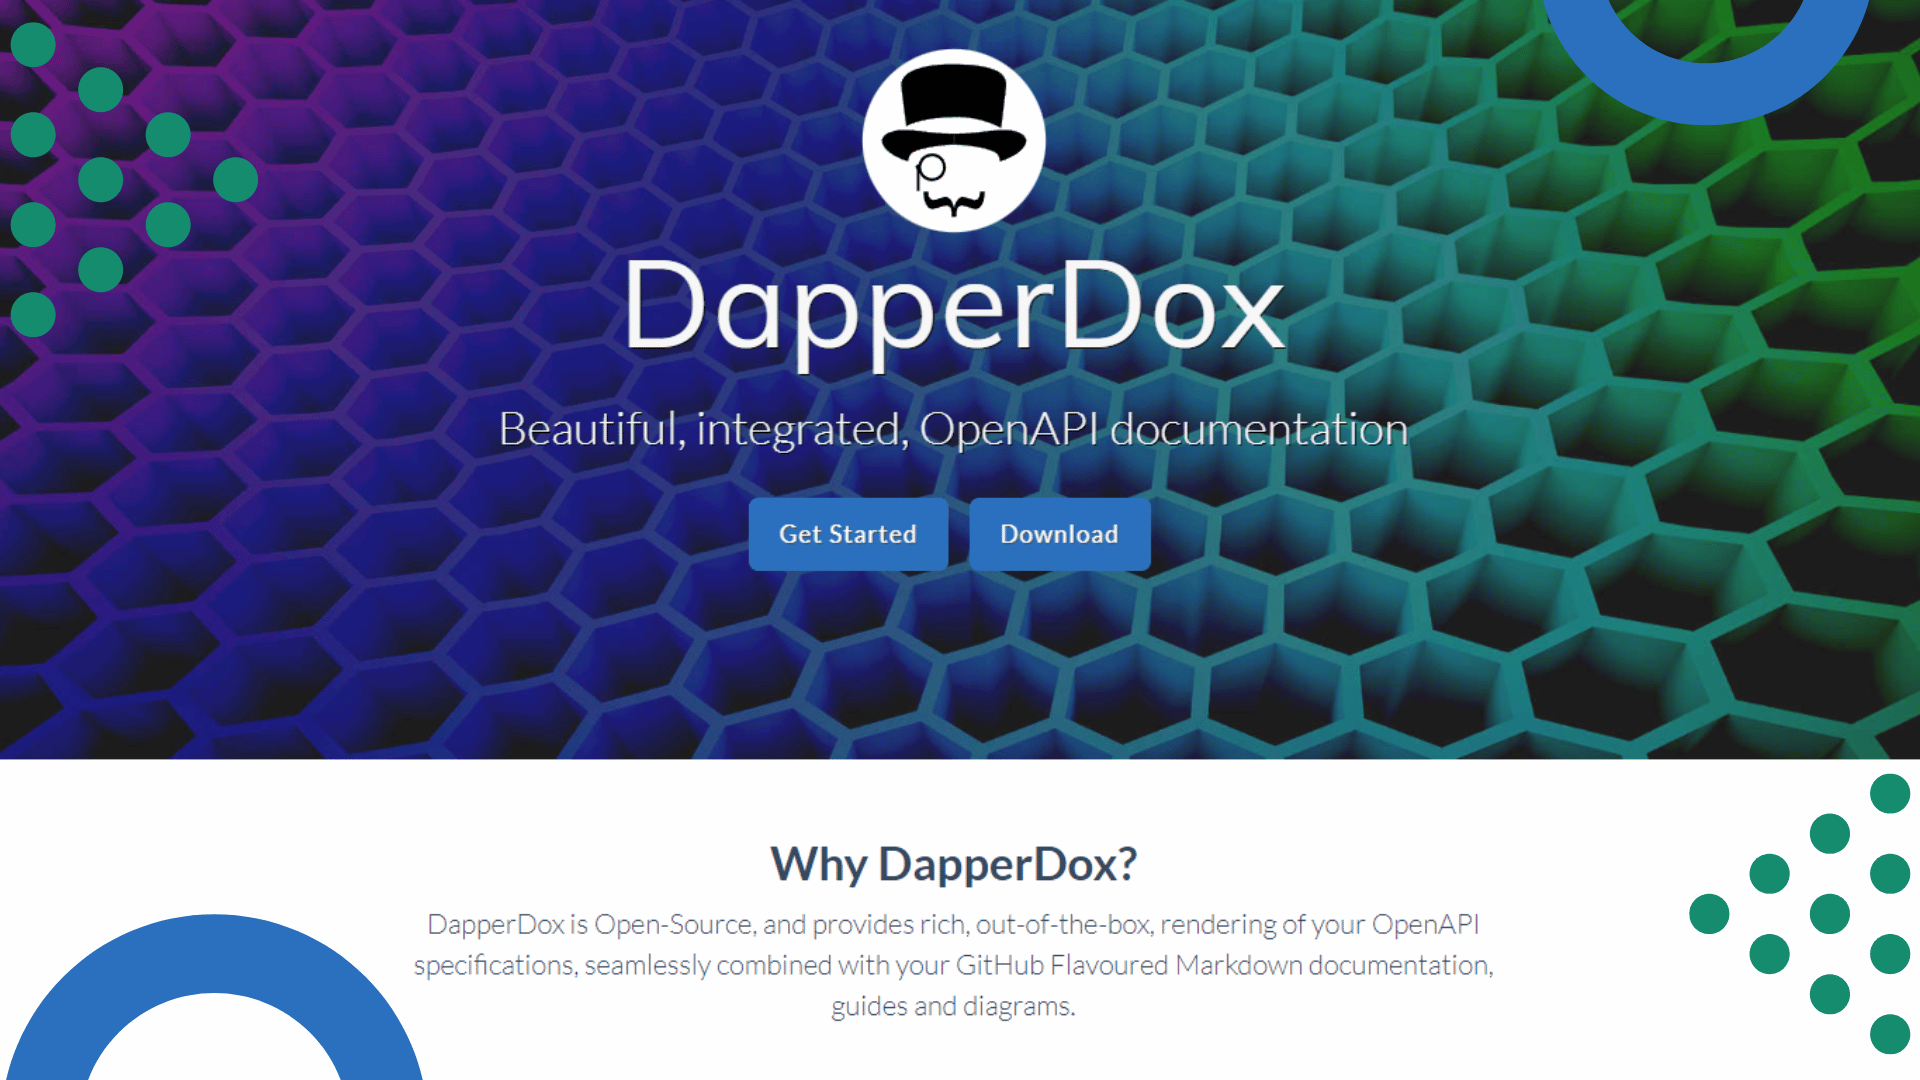 What is DapperDox